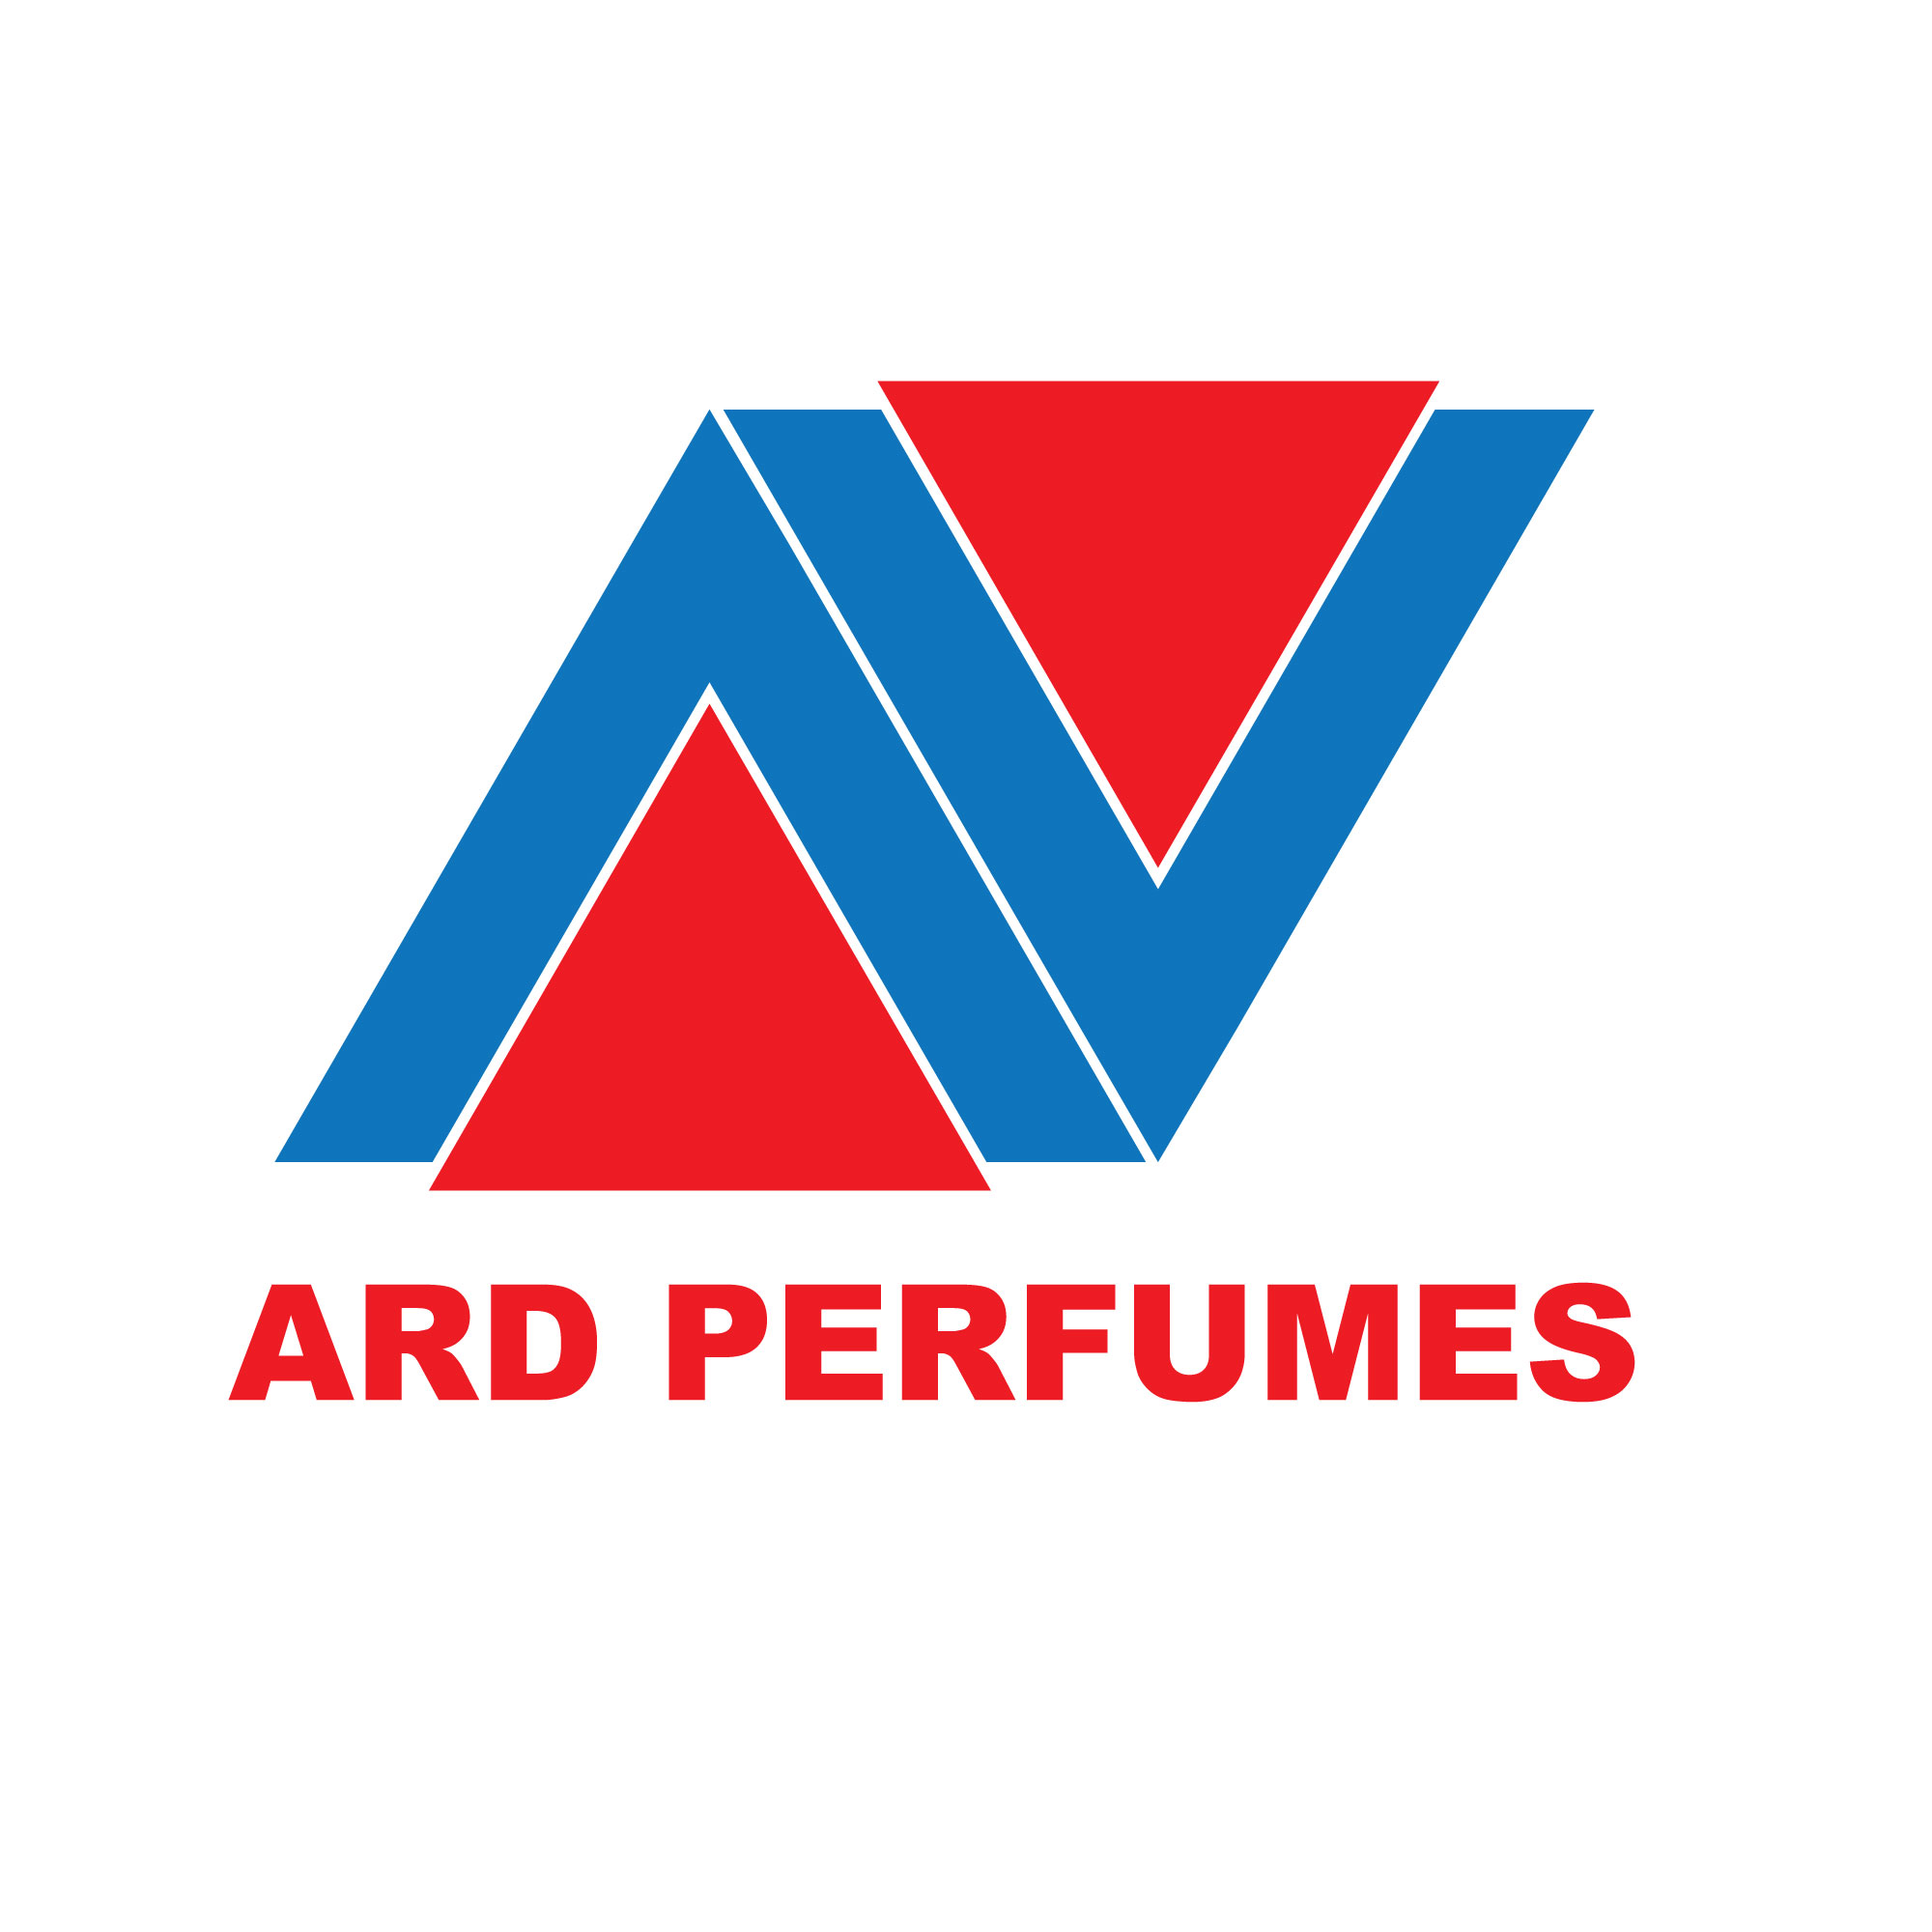 ARD Perfumes